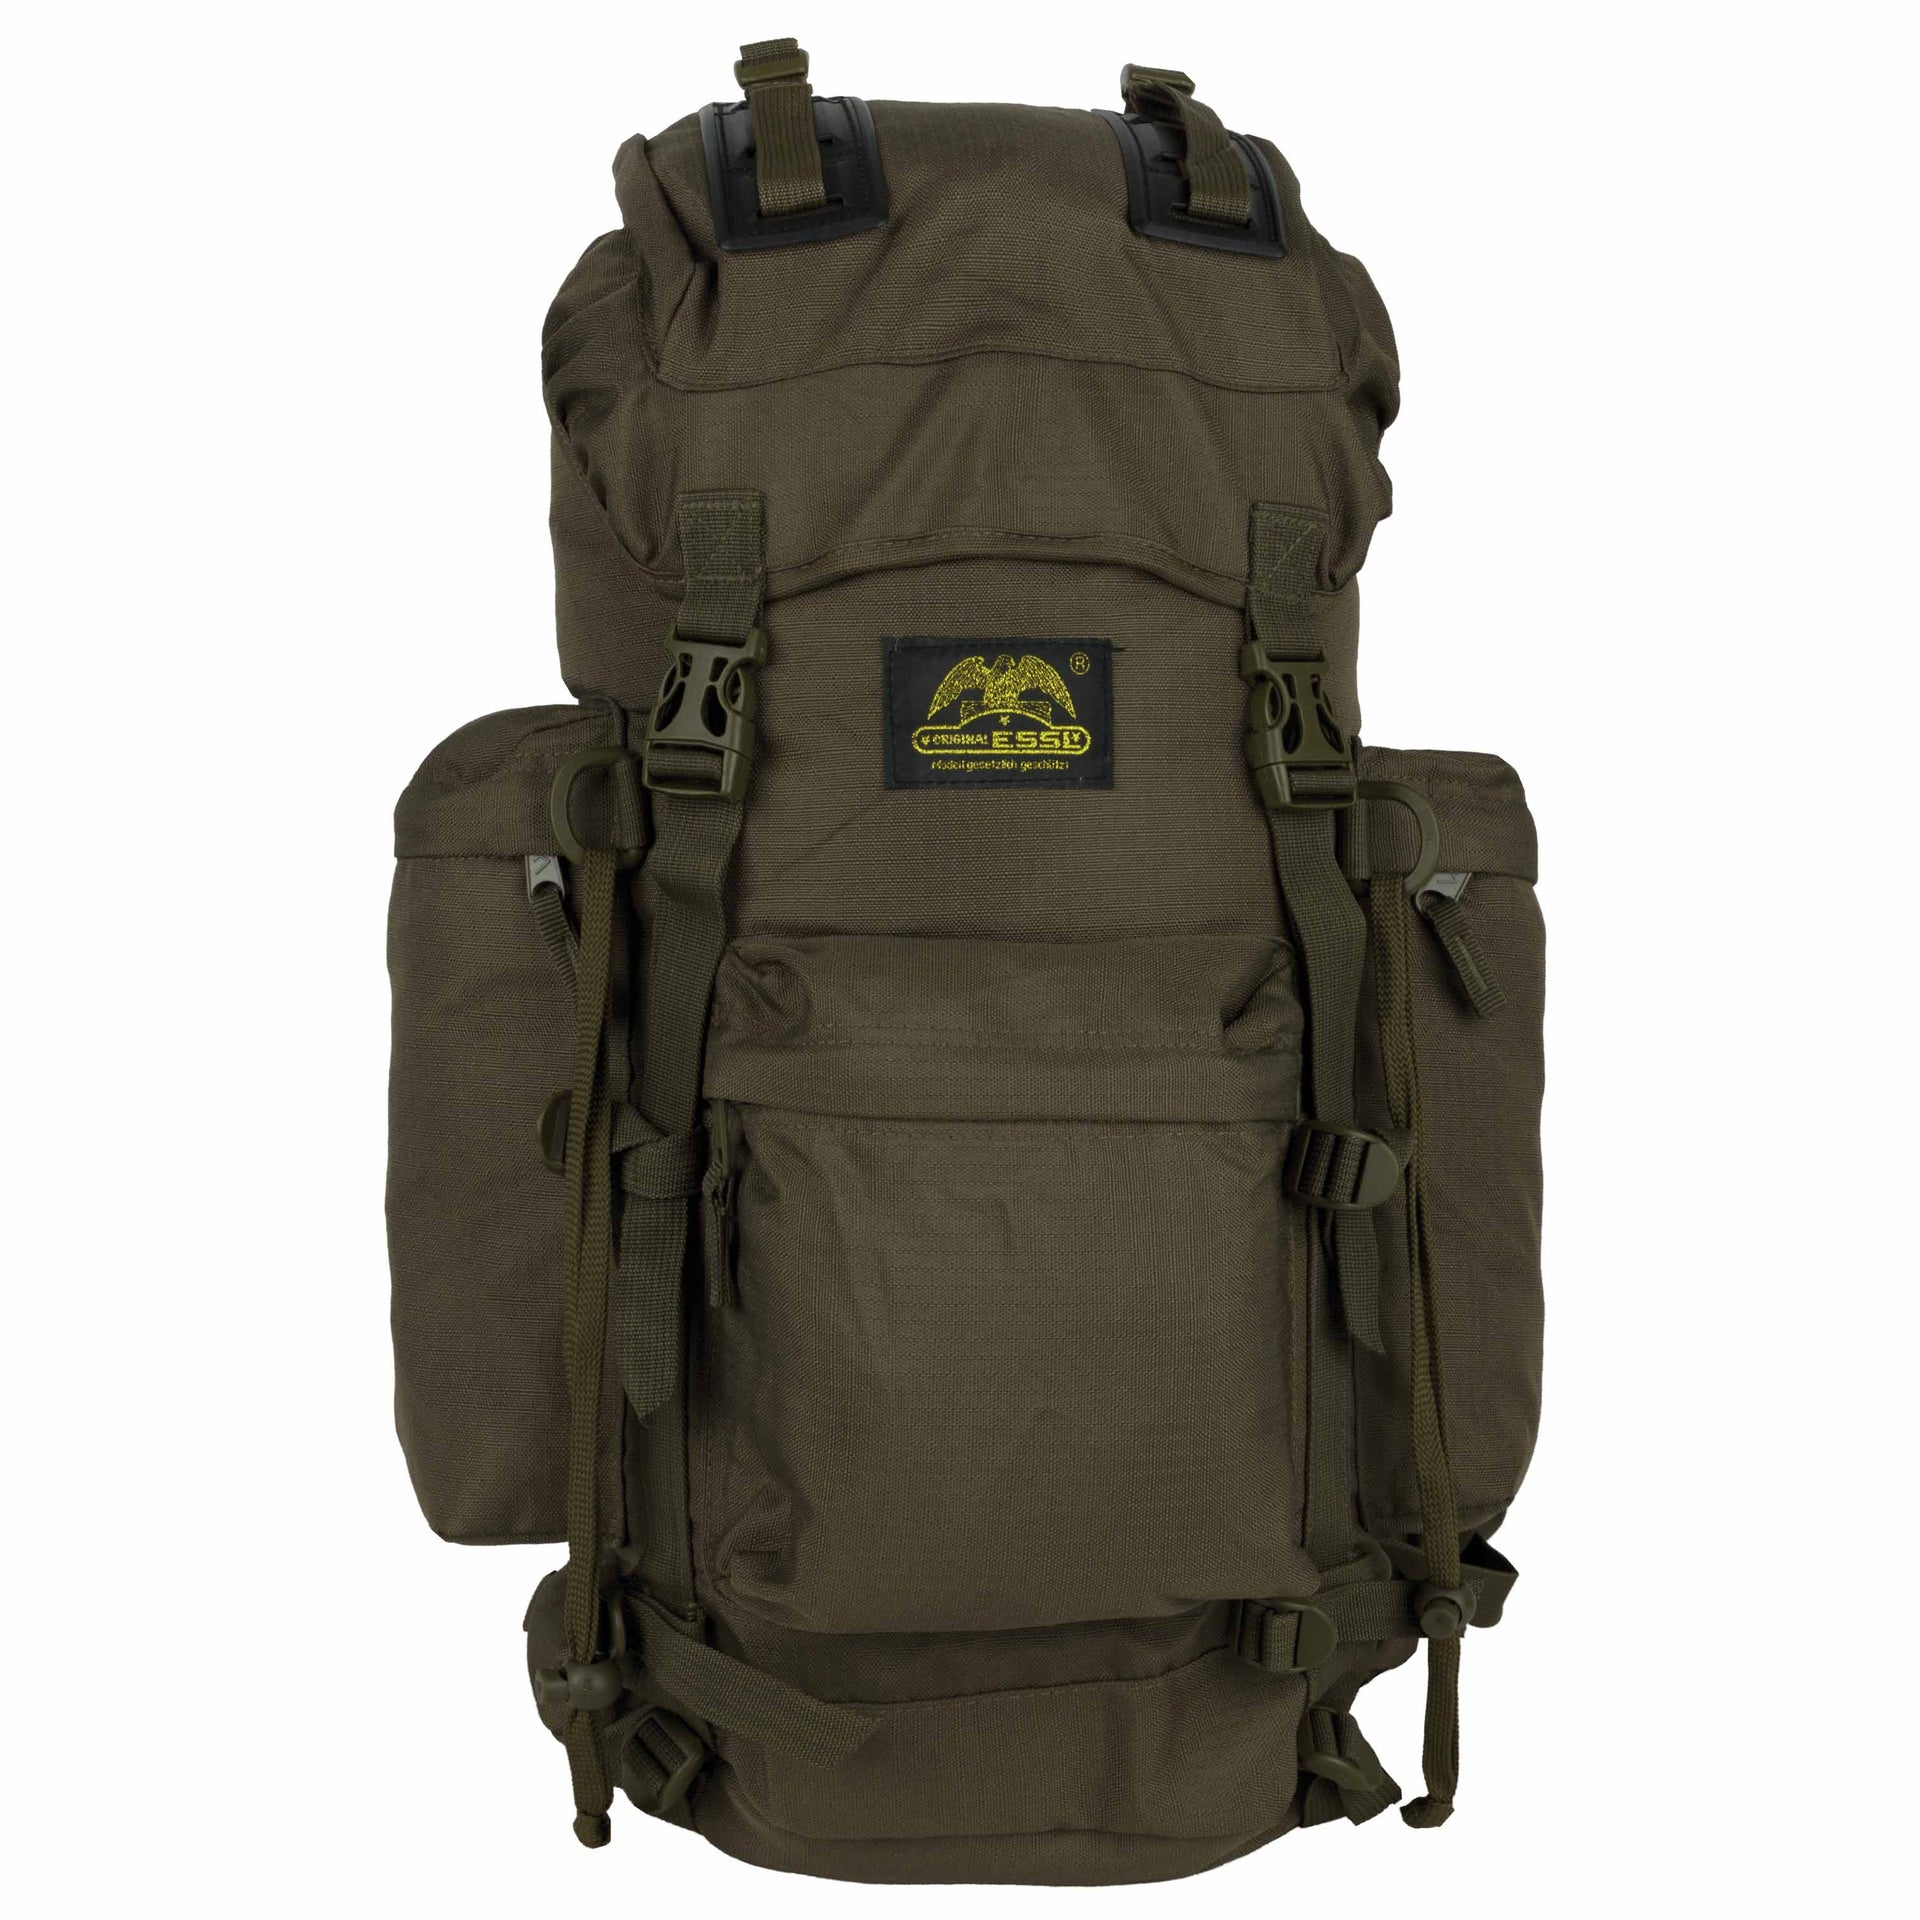 Backpack RU5026 40 Liter